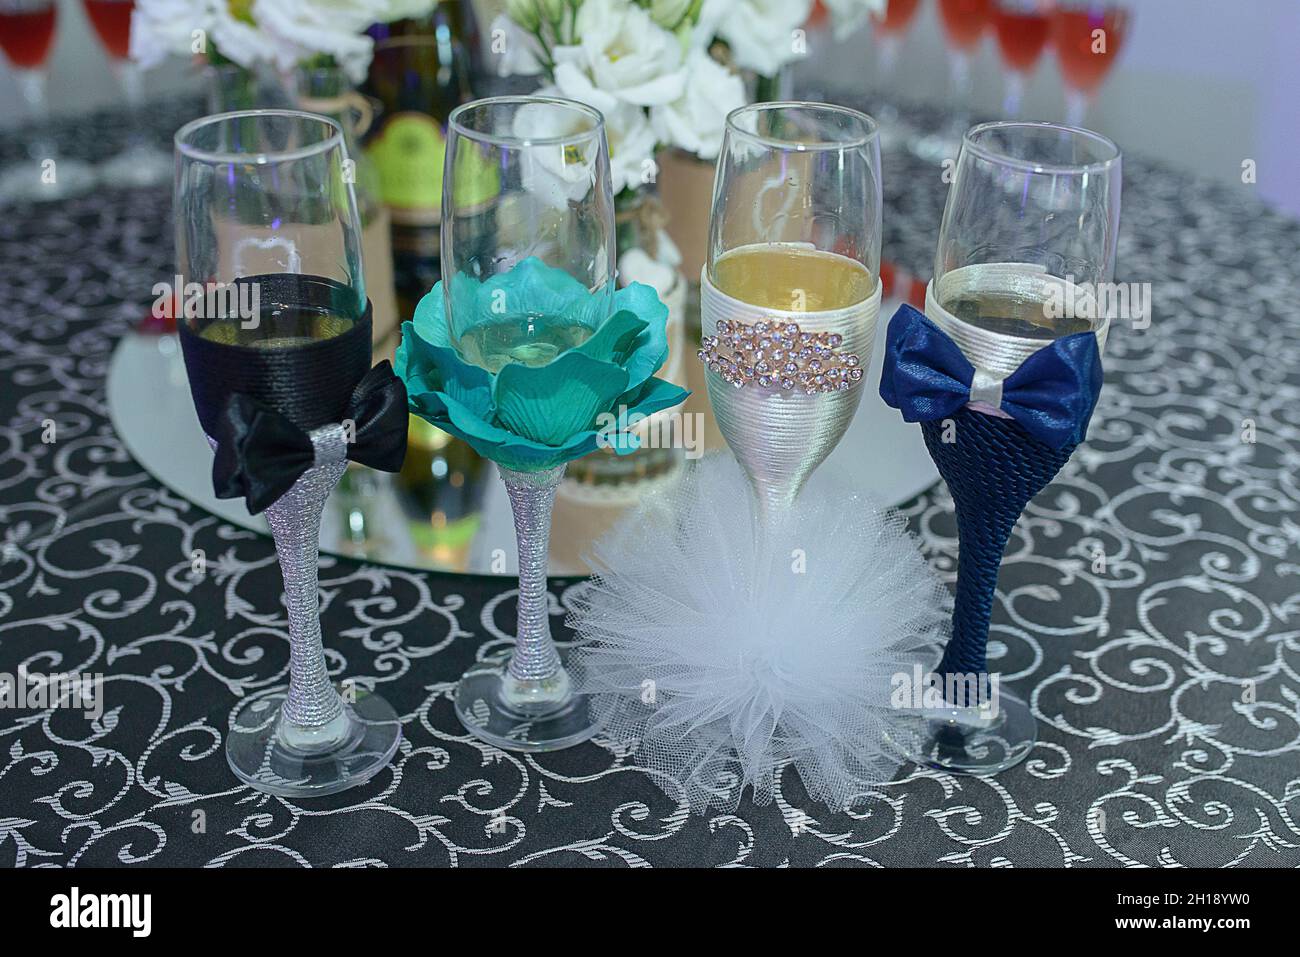 Vier spielerisch dekorierte Flötengläser für eine Hochzeit, mit Fliege und Bommel-Poms, die den Braut- und Bräutigam-Outfits ähneln, niedliche Gläser für Gäste-Drinks Stockfoto